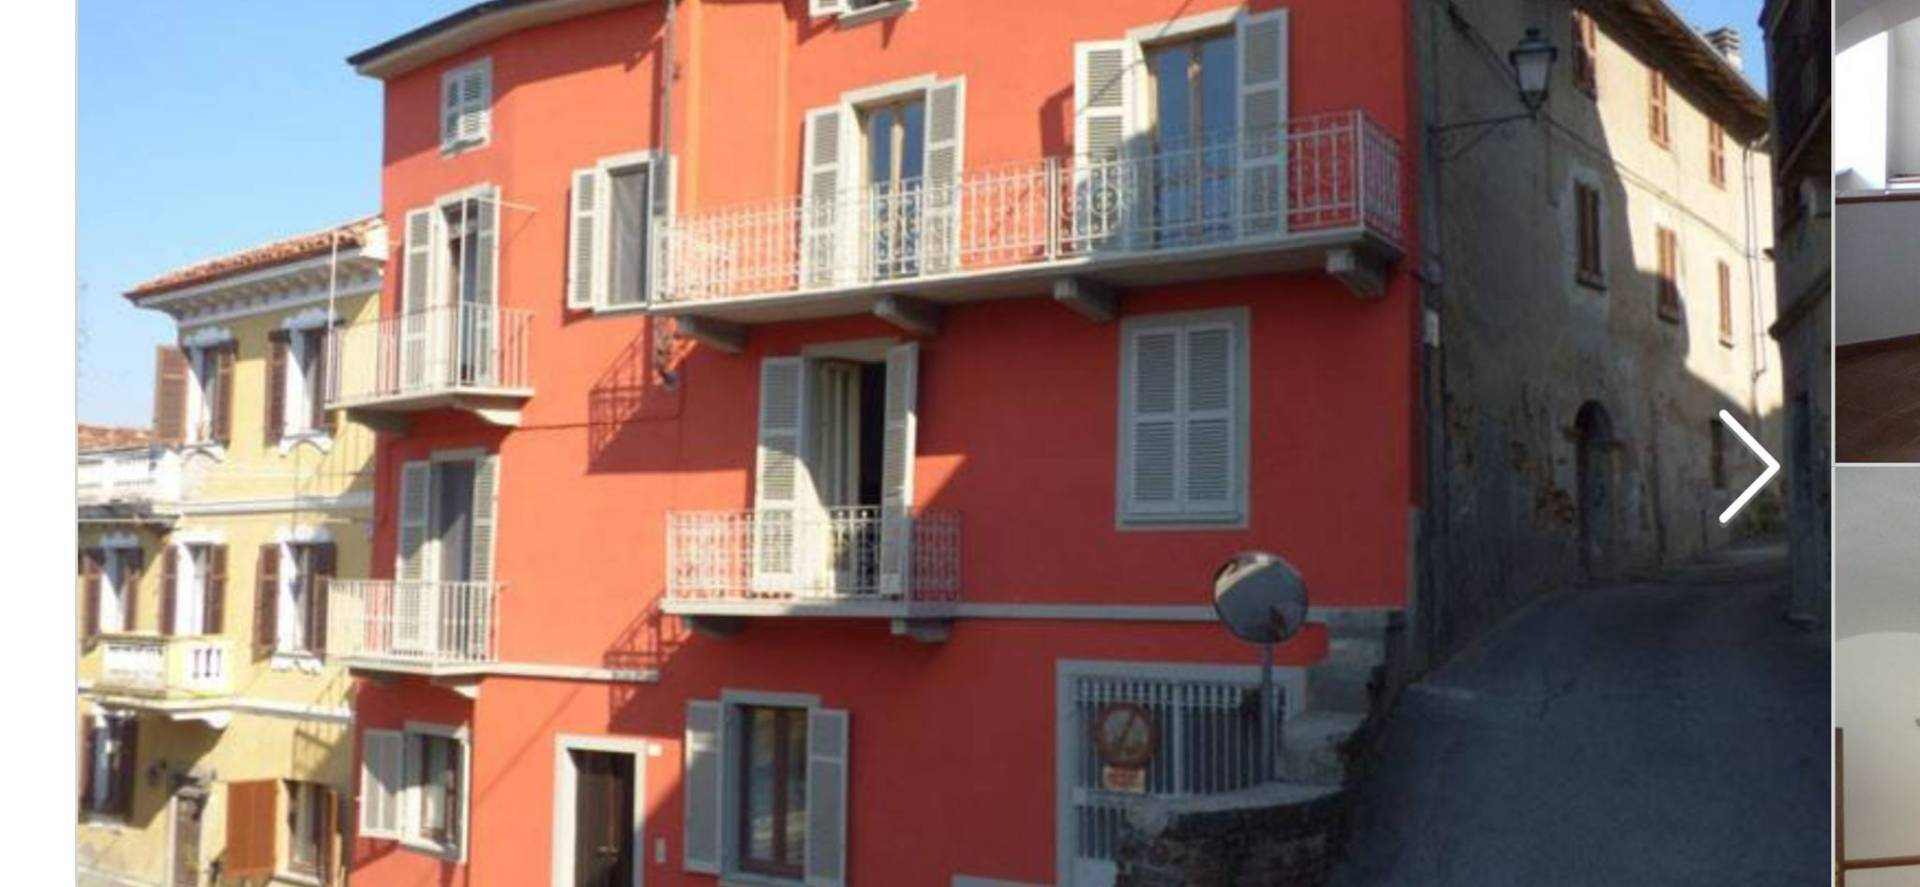 Casa indipendente da ristrutturare a Vignale Monferrato